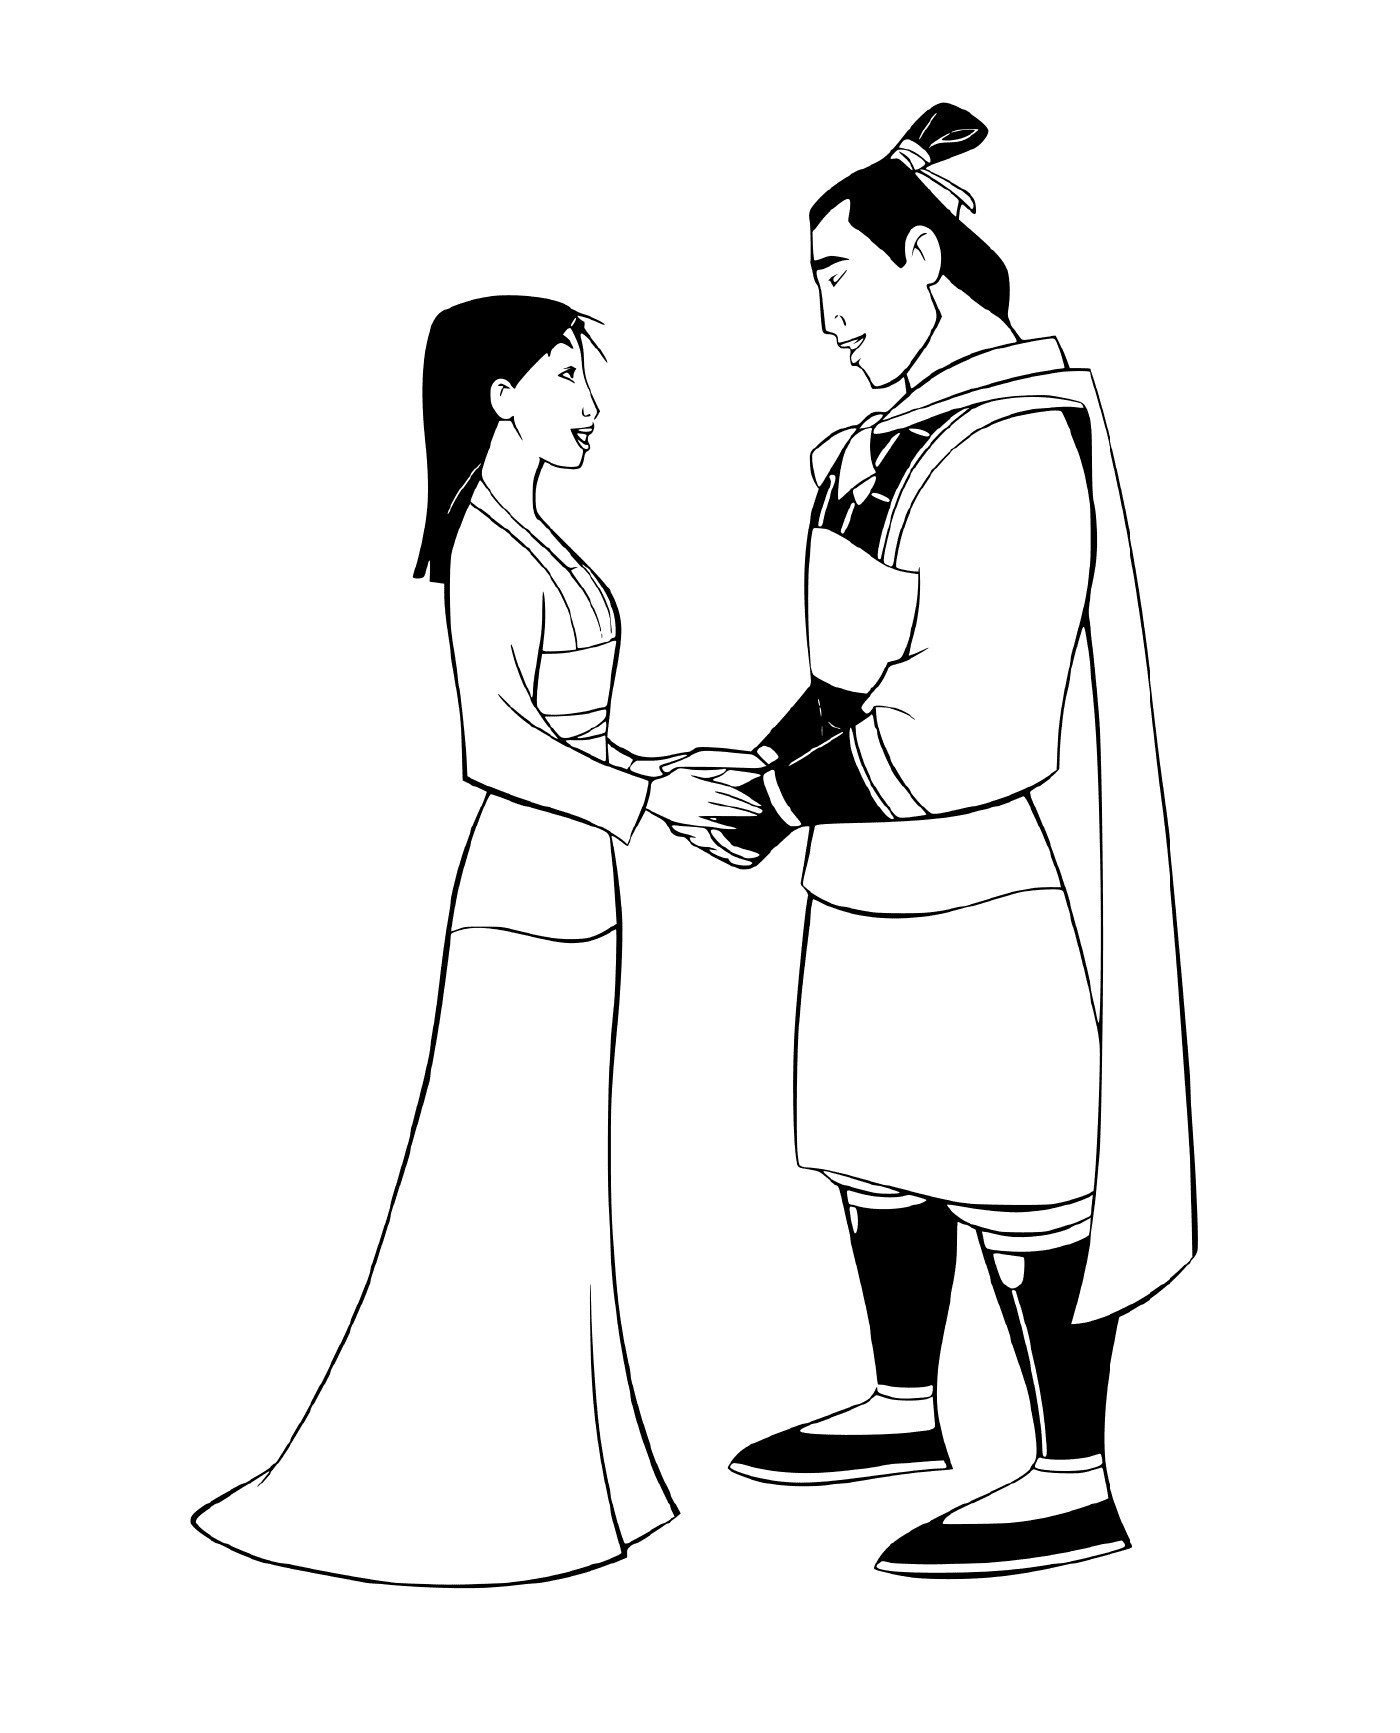  Mulan und Li Shang, Komplizen 